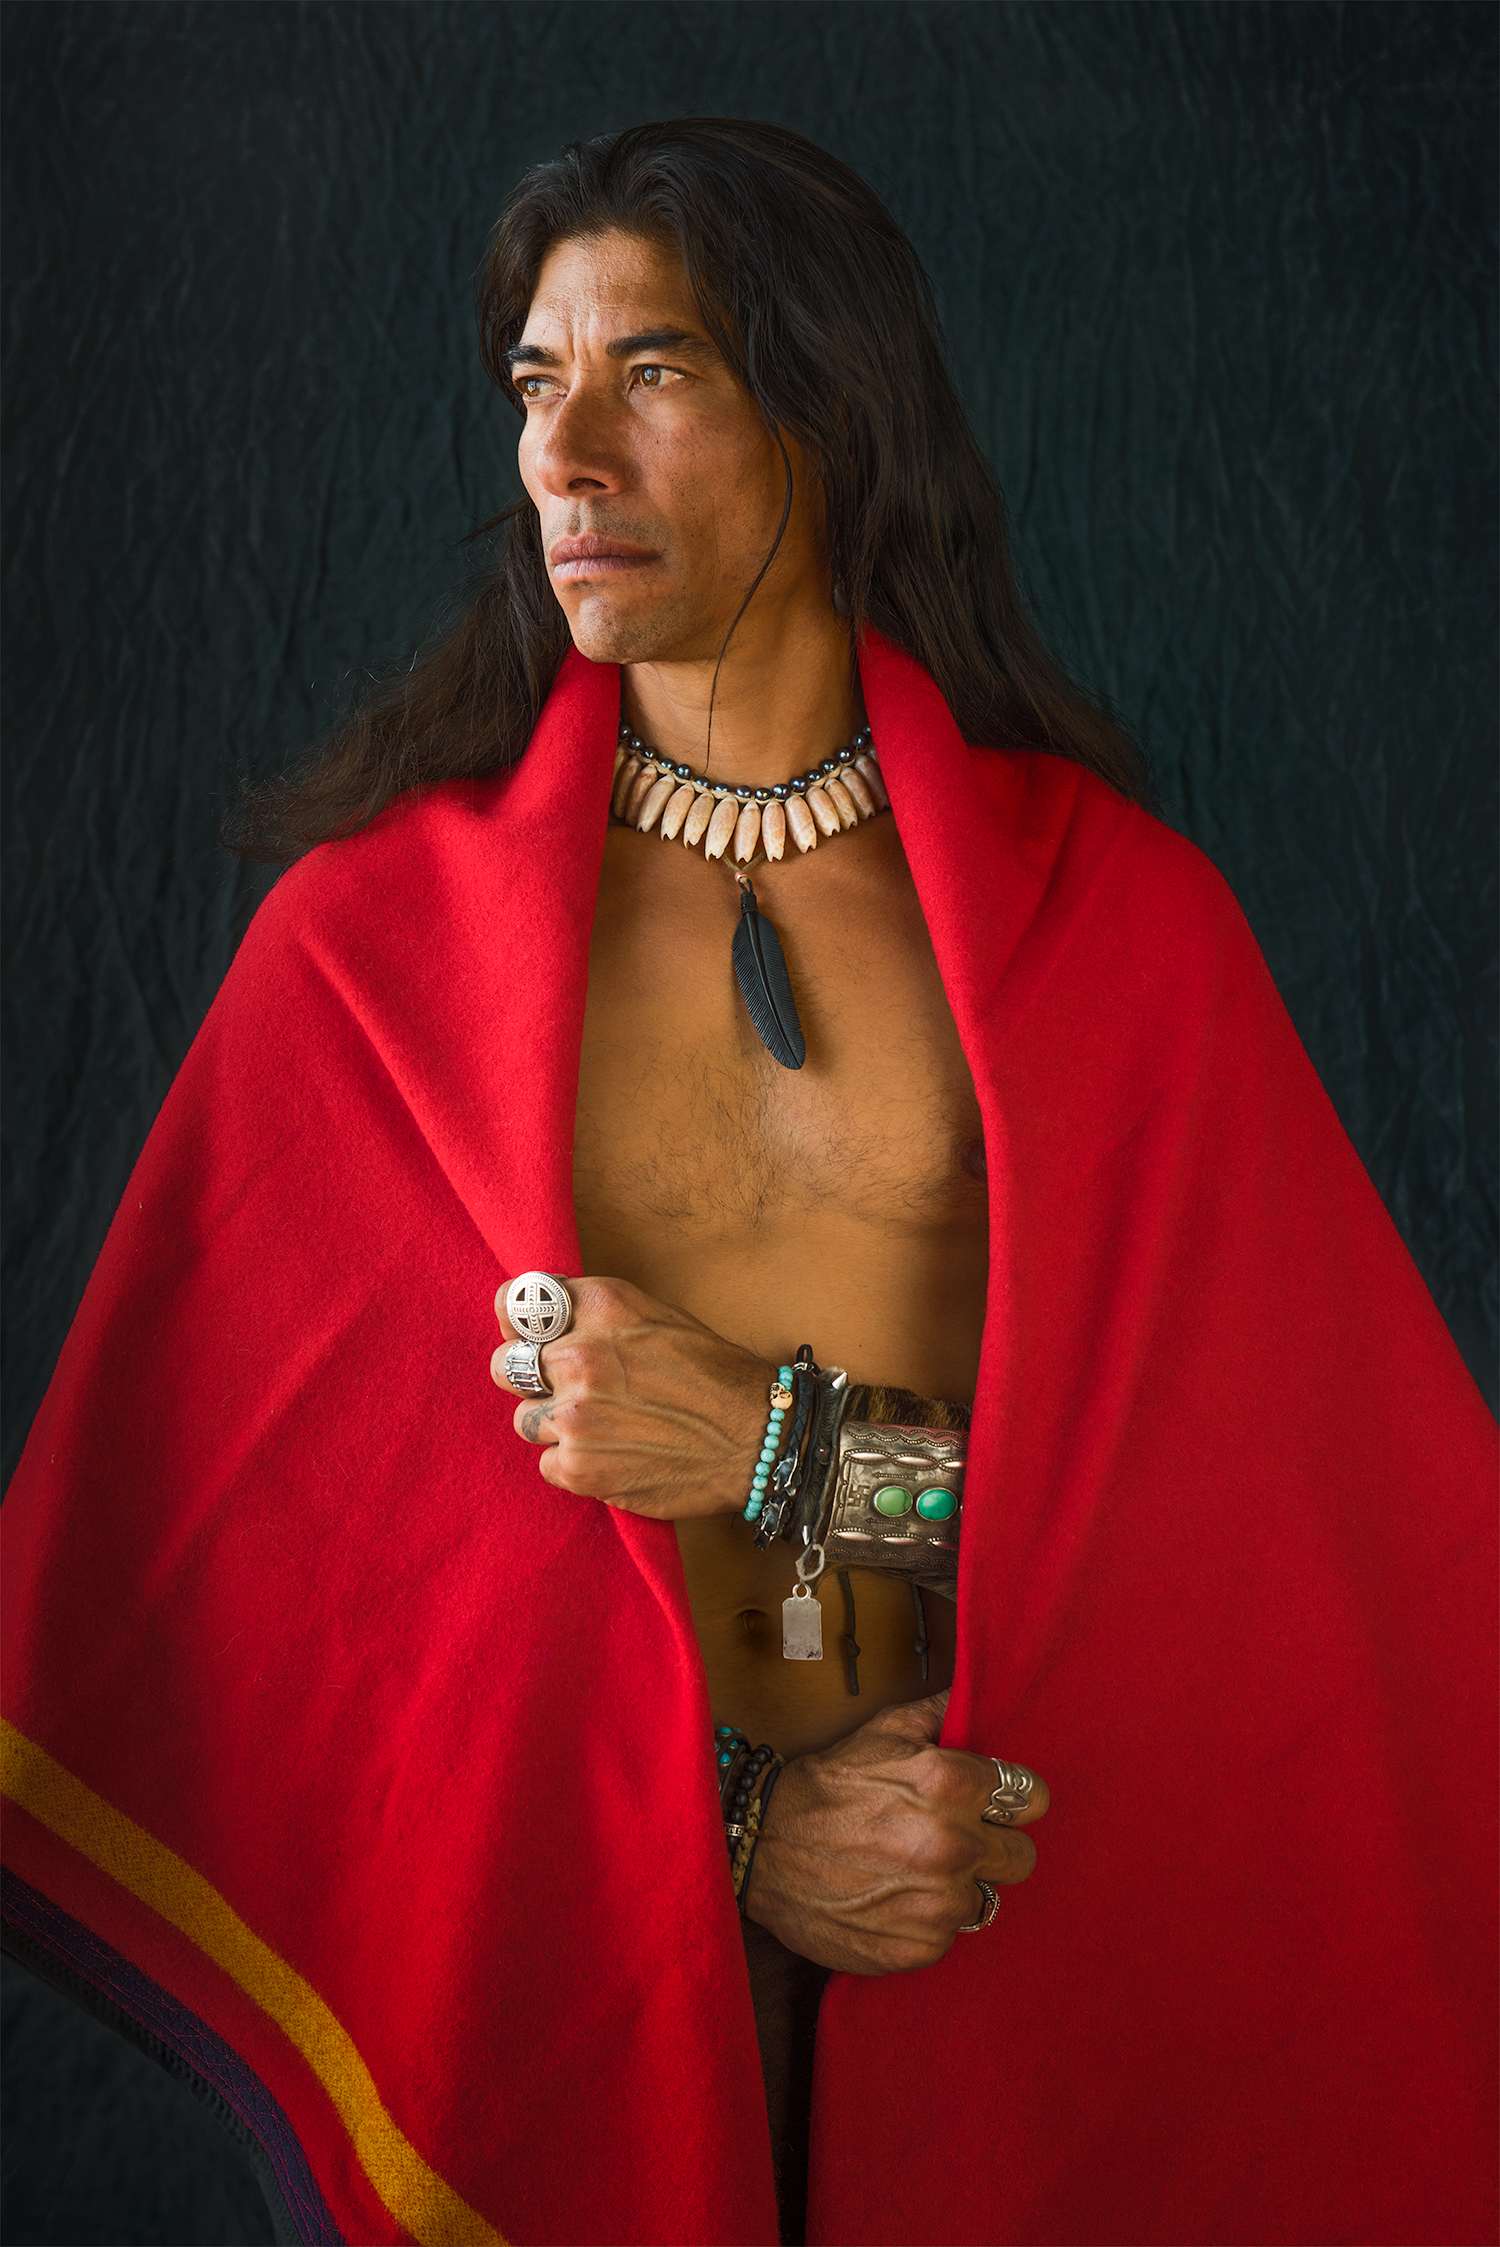  Kuhma Tuhuya (Man Horse), Comanche 